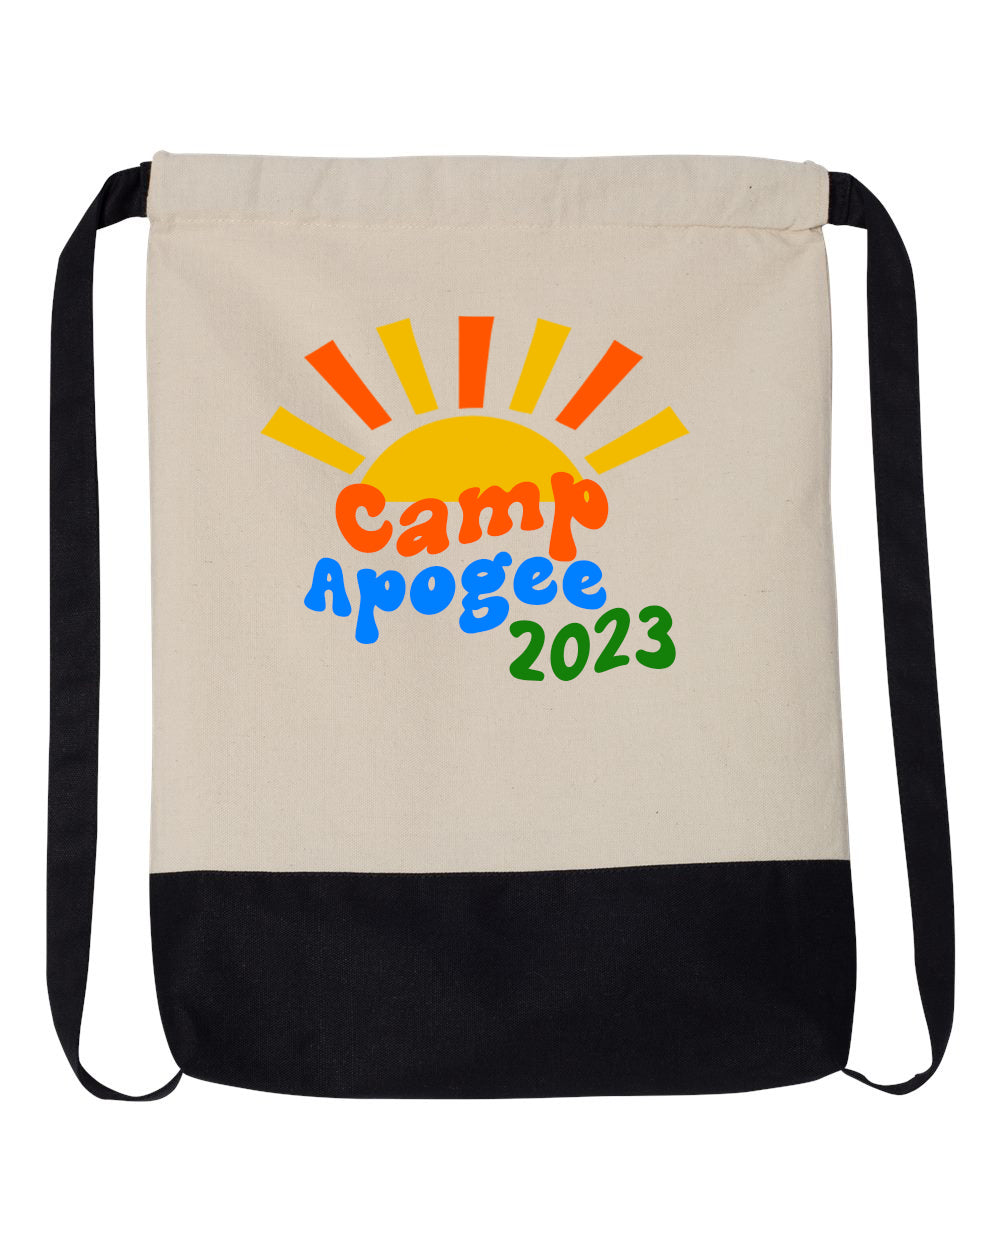 Hilltop Camp Design 2 Drawstring Bag